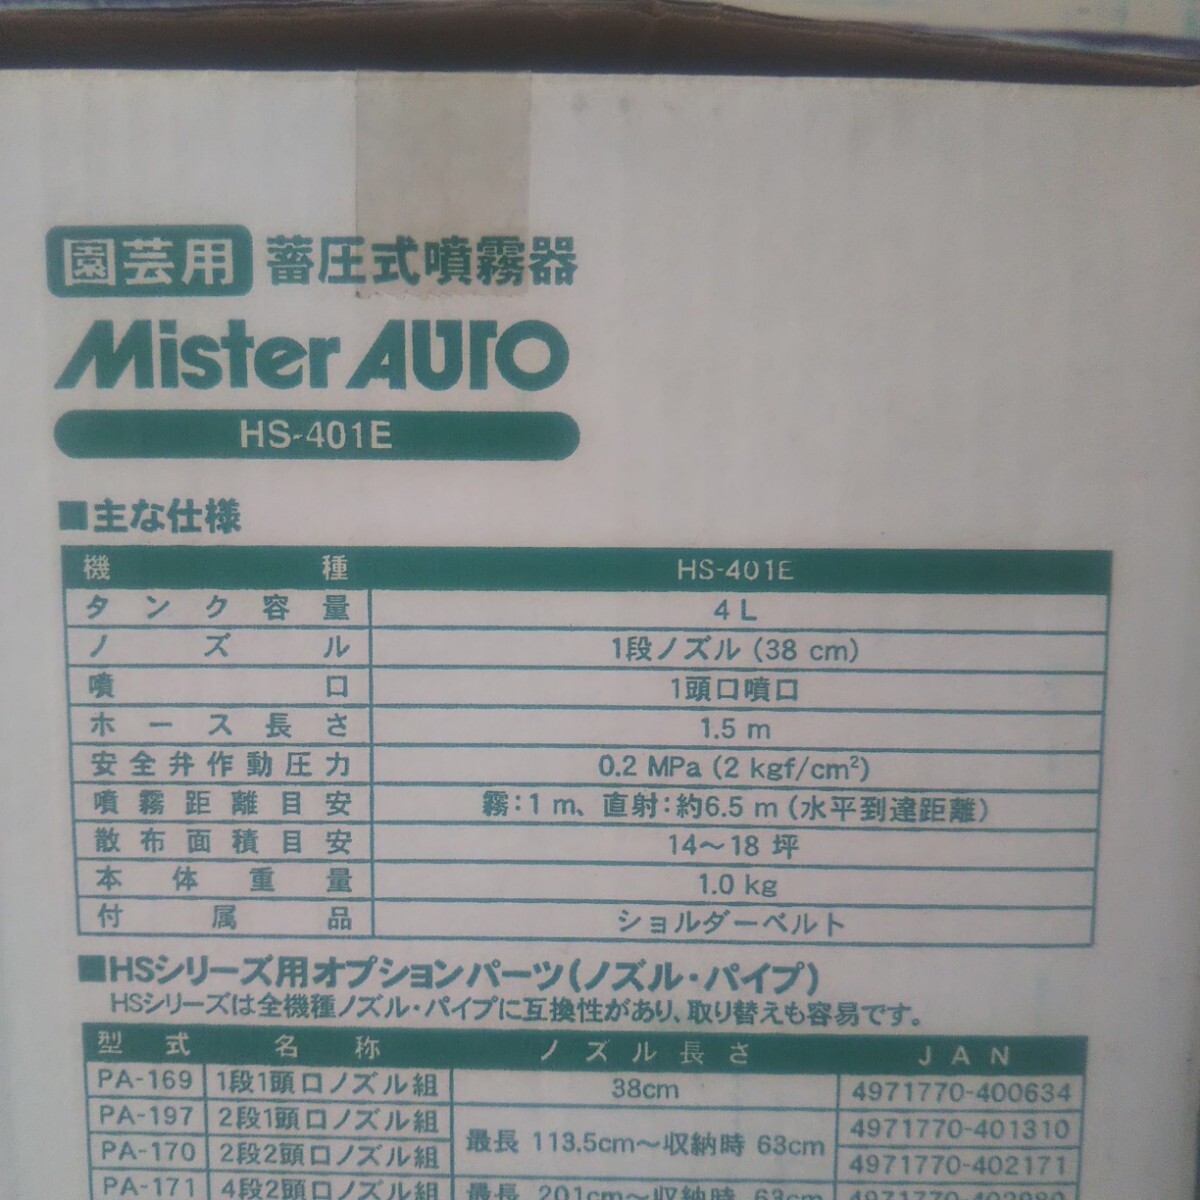  Koshin . давление тип распылитель Mr. авто HS-401E бак 4L 14~18 цубо для плечо . тип разбрызгивание не использовался 